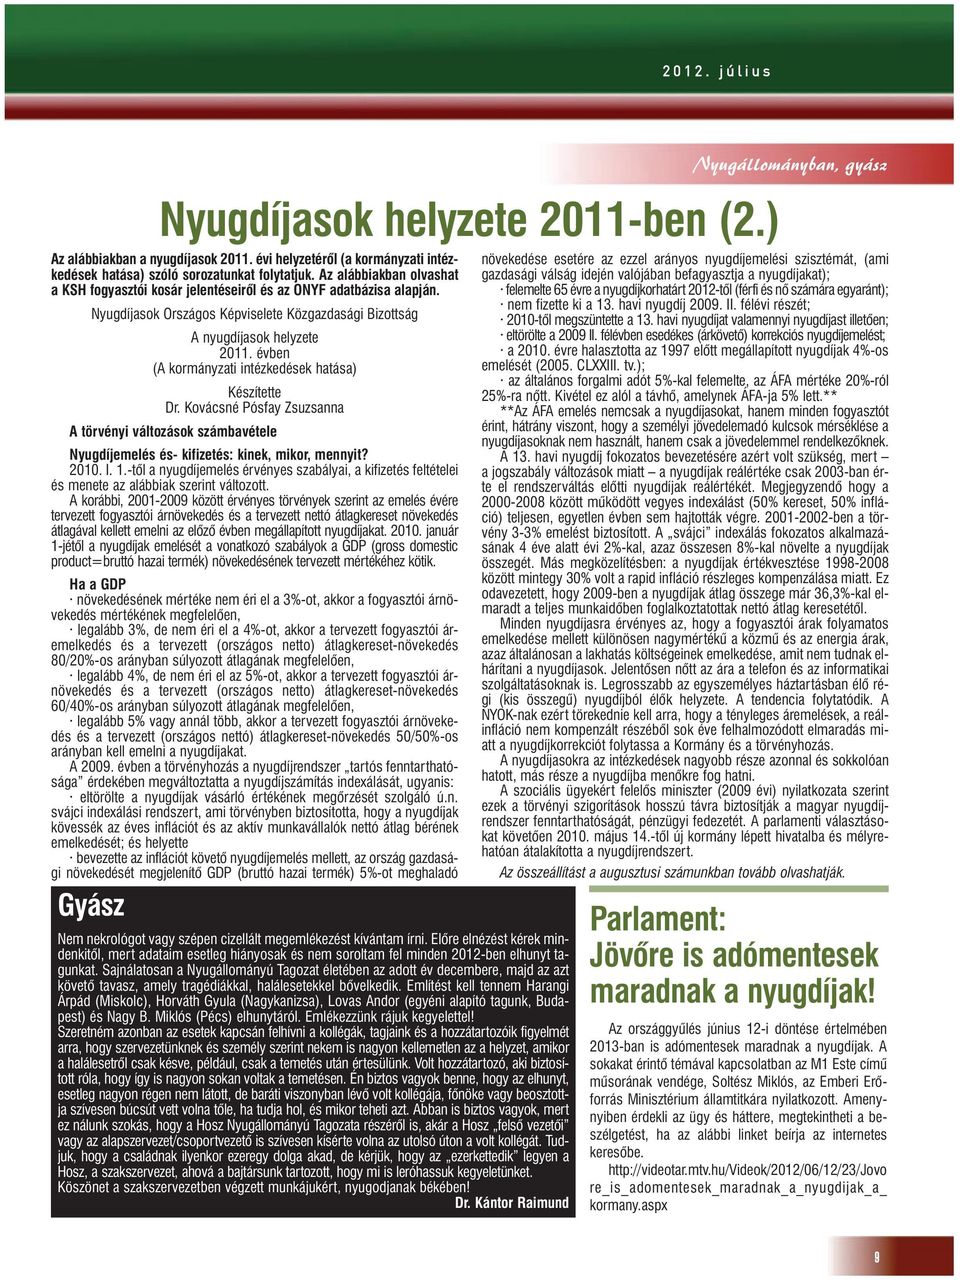 évben (A kormányzati intézkedések hatása) Készítette Dr. Kovácsné Pósfay Zsuzsanna A törvényi változások számbavétele Nyugdíjemelés és- kifizetés: kinek, mikor, mennyit? 2010. I. 1.